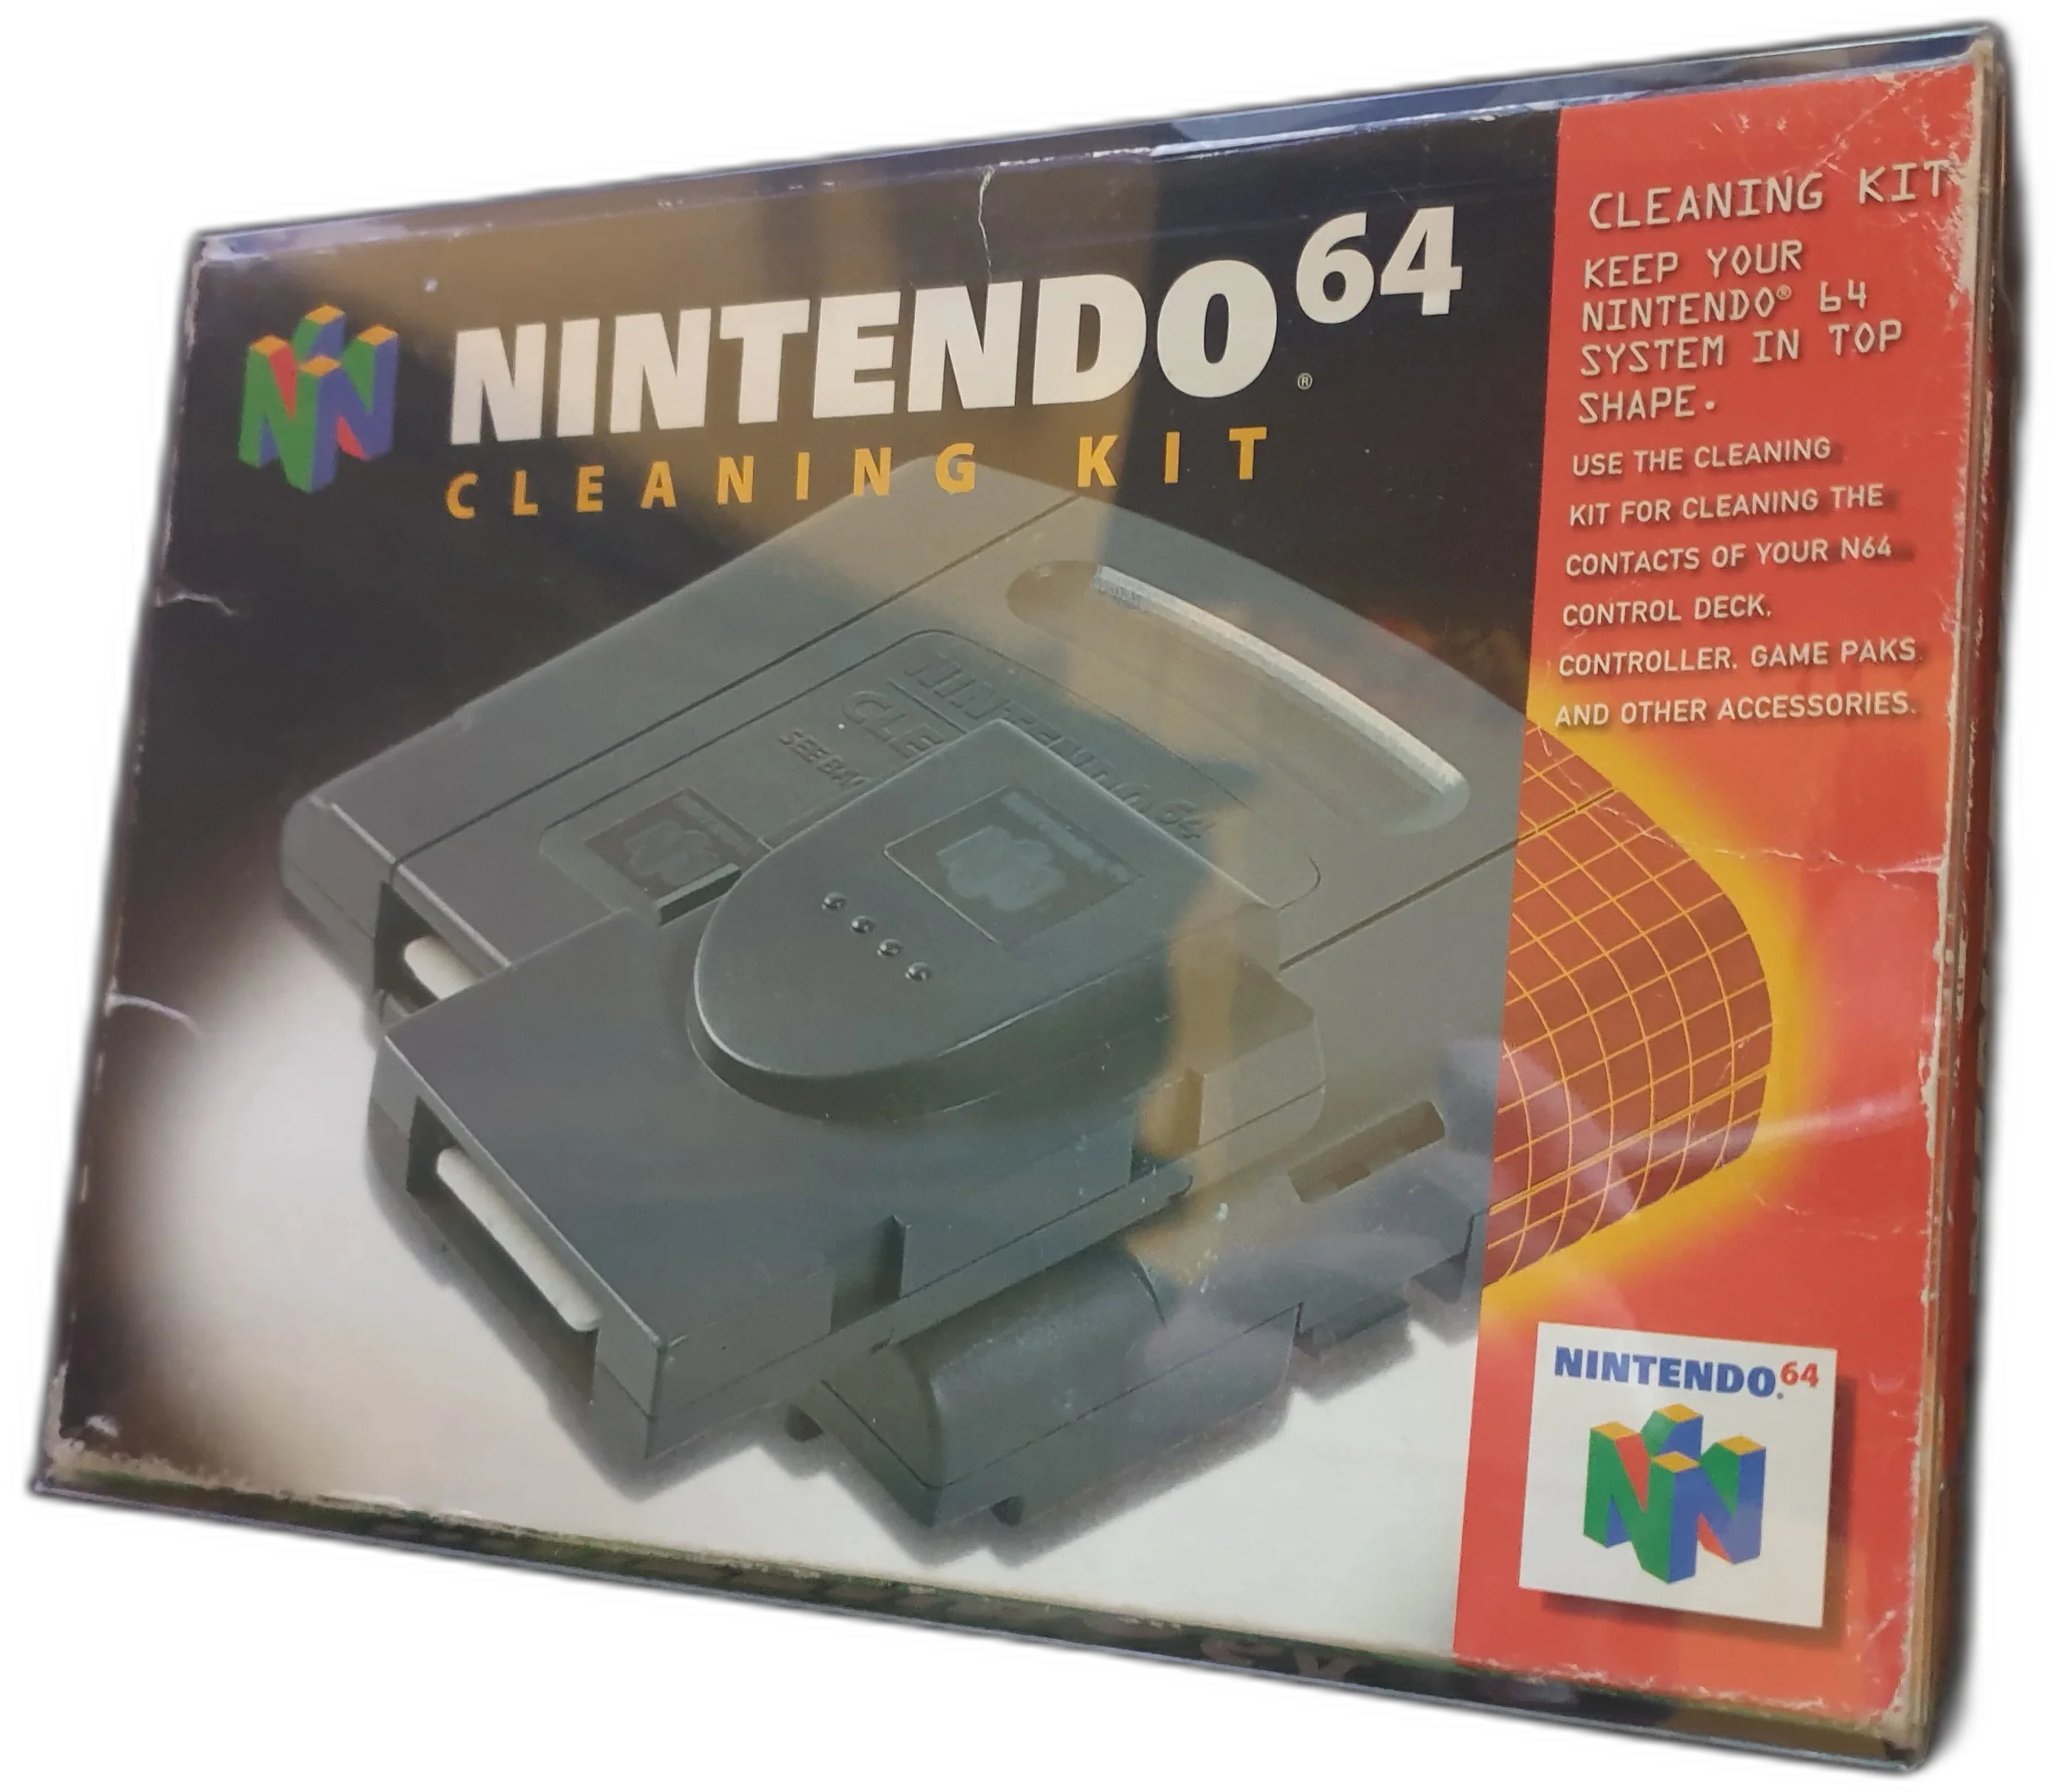  Nintendo 64 Cleaning Kit [AUS]